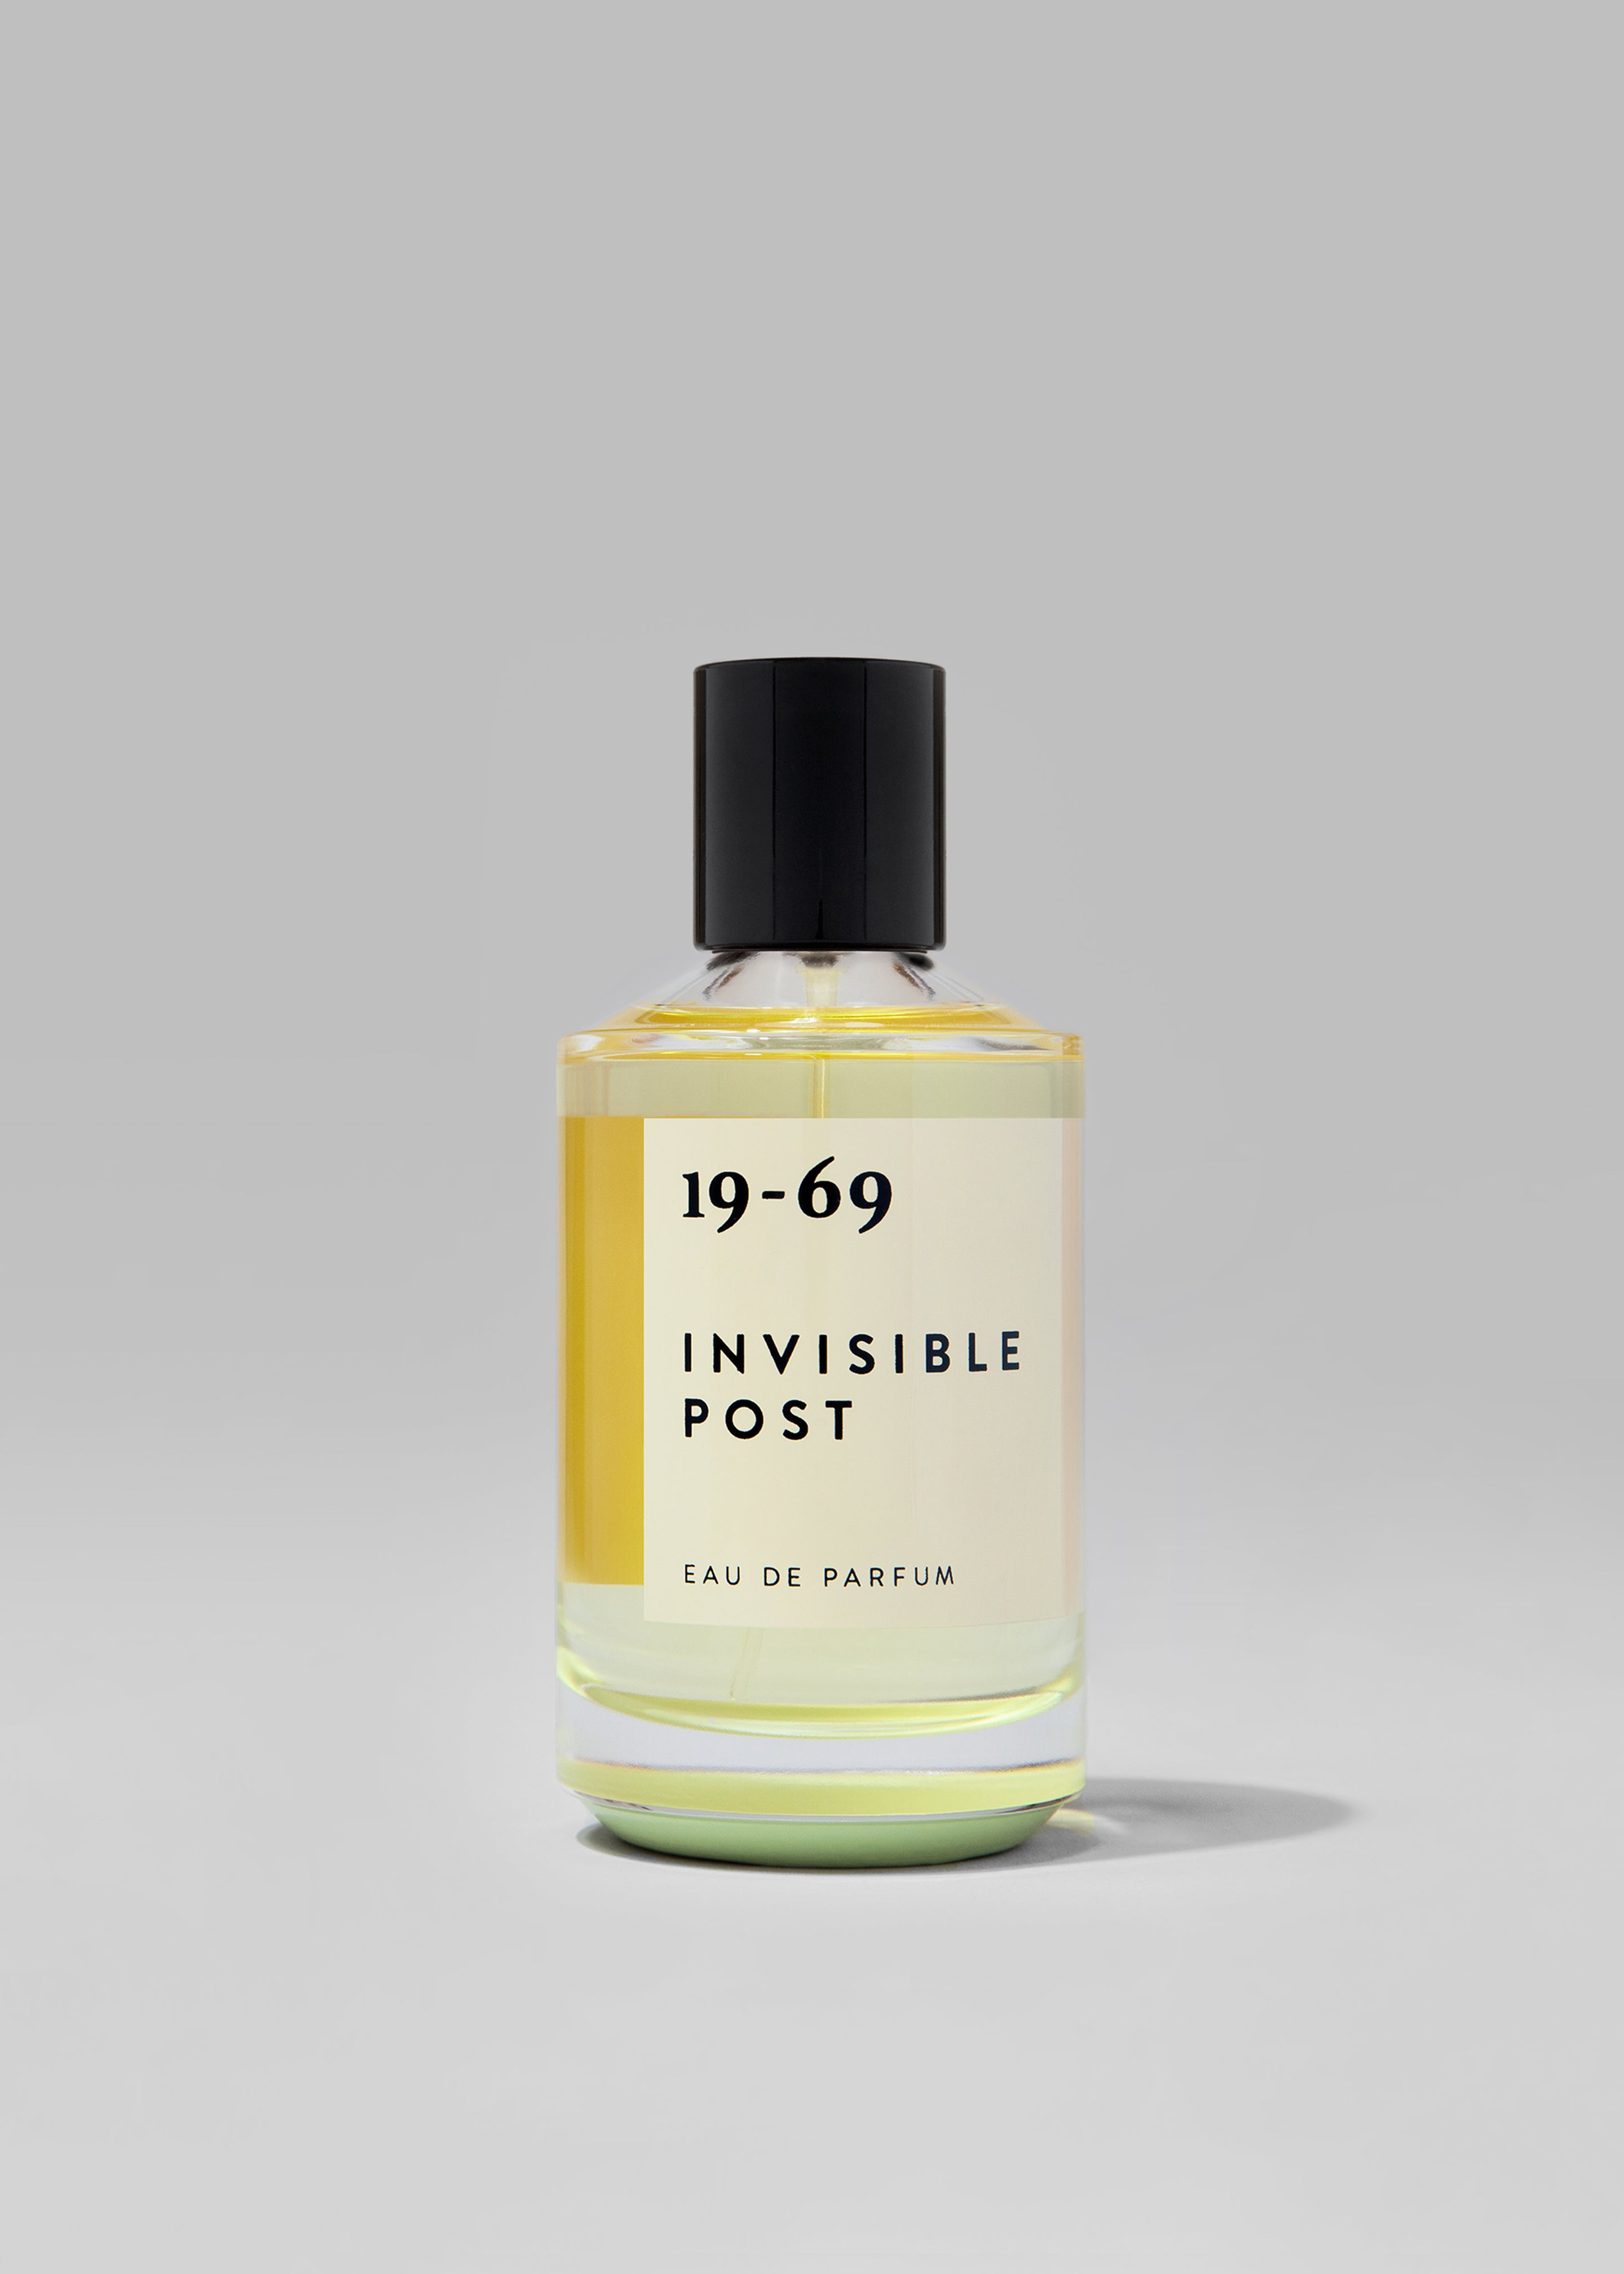 19-69 Invisible Post Eau de Parfum - 1